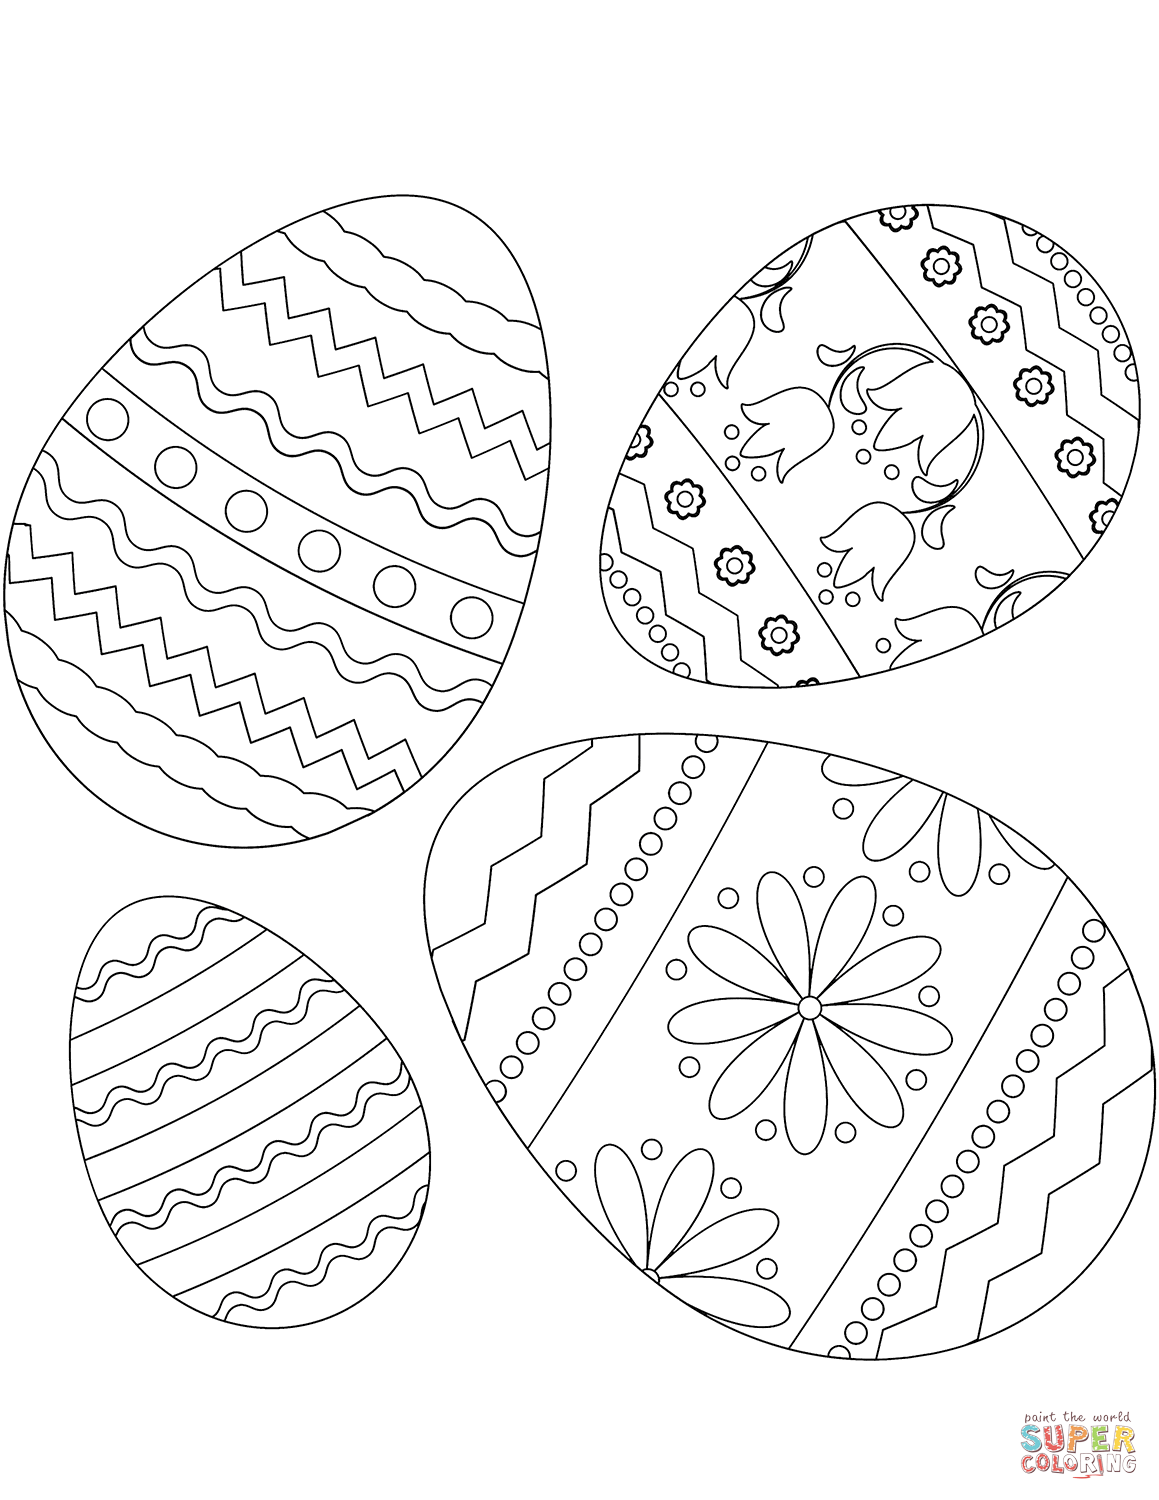 Dibujo de cuatro huevos de pascua para colorear dibujos para colorear imprimir gratis